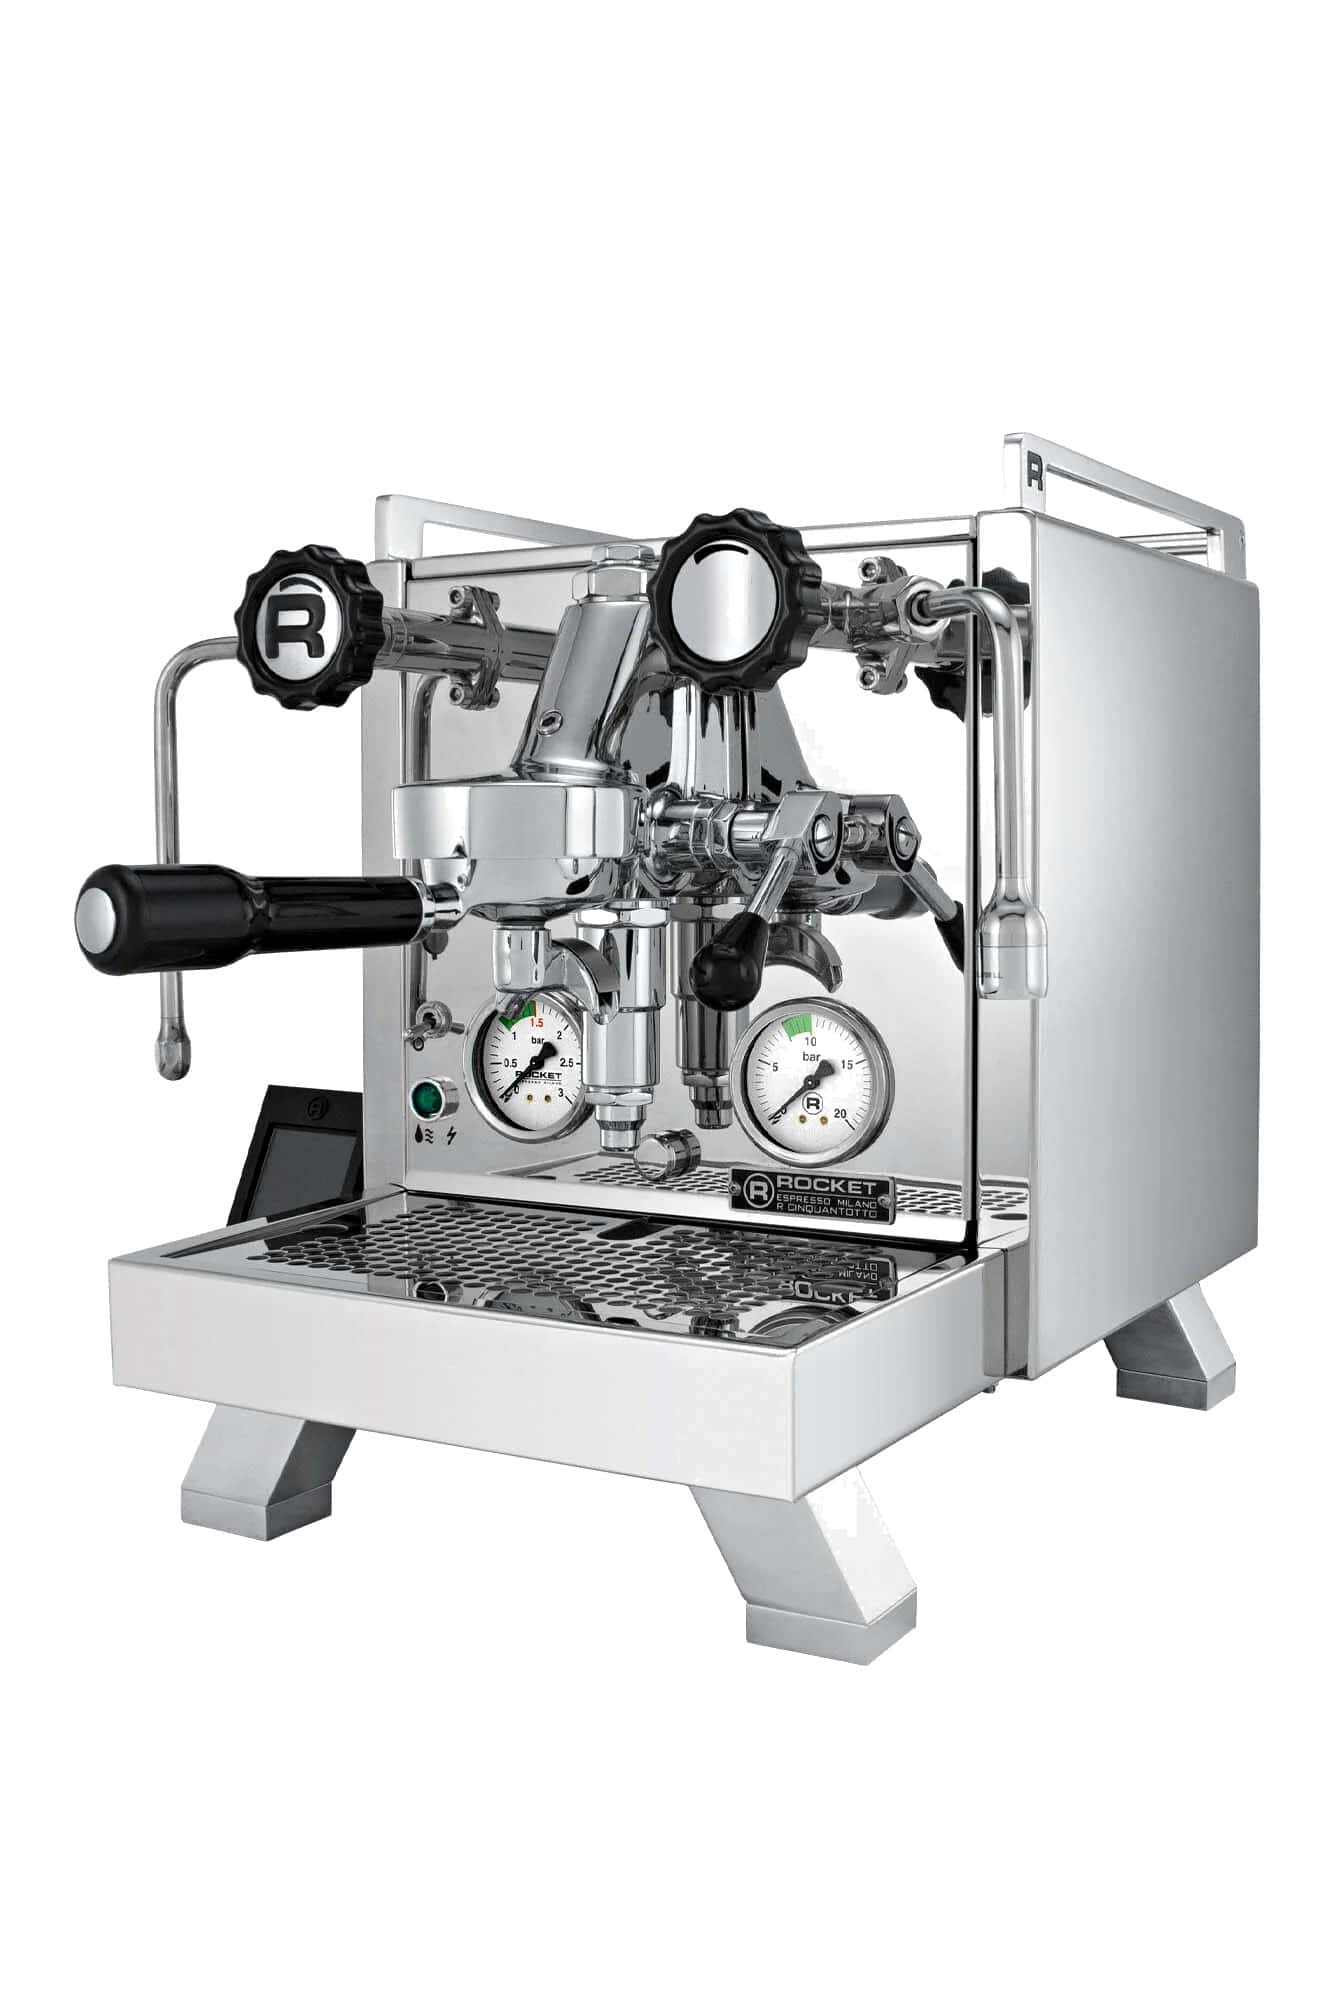 Dualboiler-Espressomaschine Rocket R Cinquantotto V3 Seitenansicht rechts